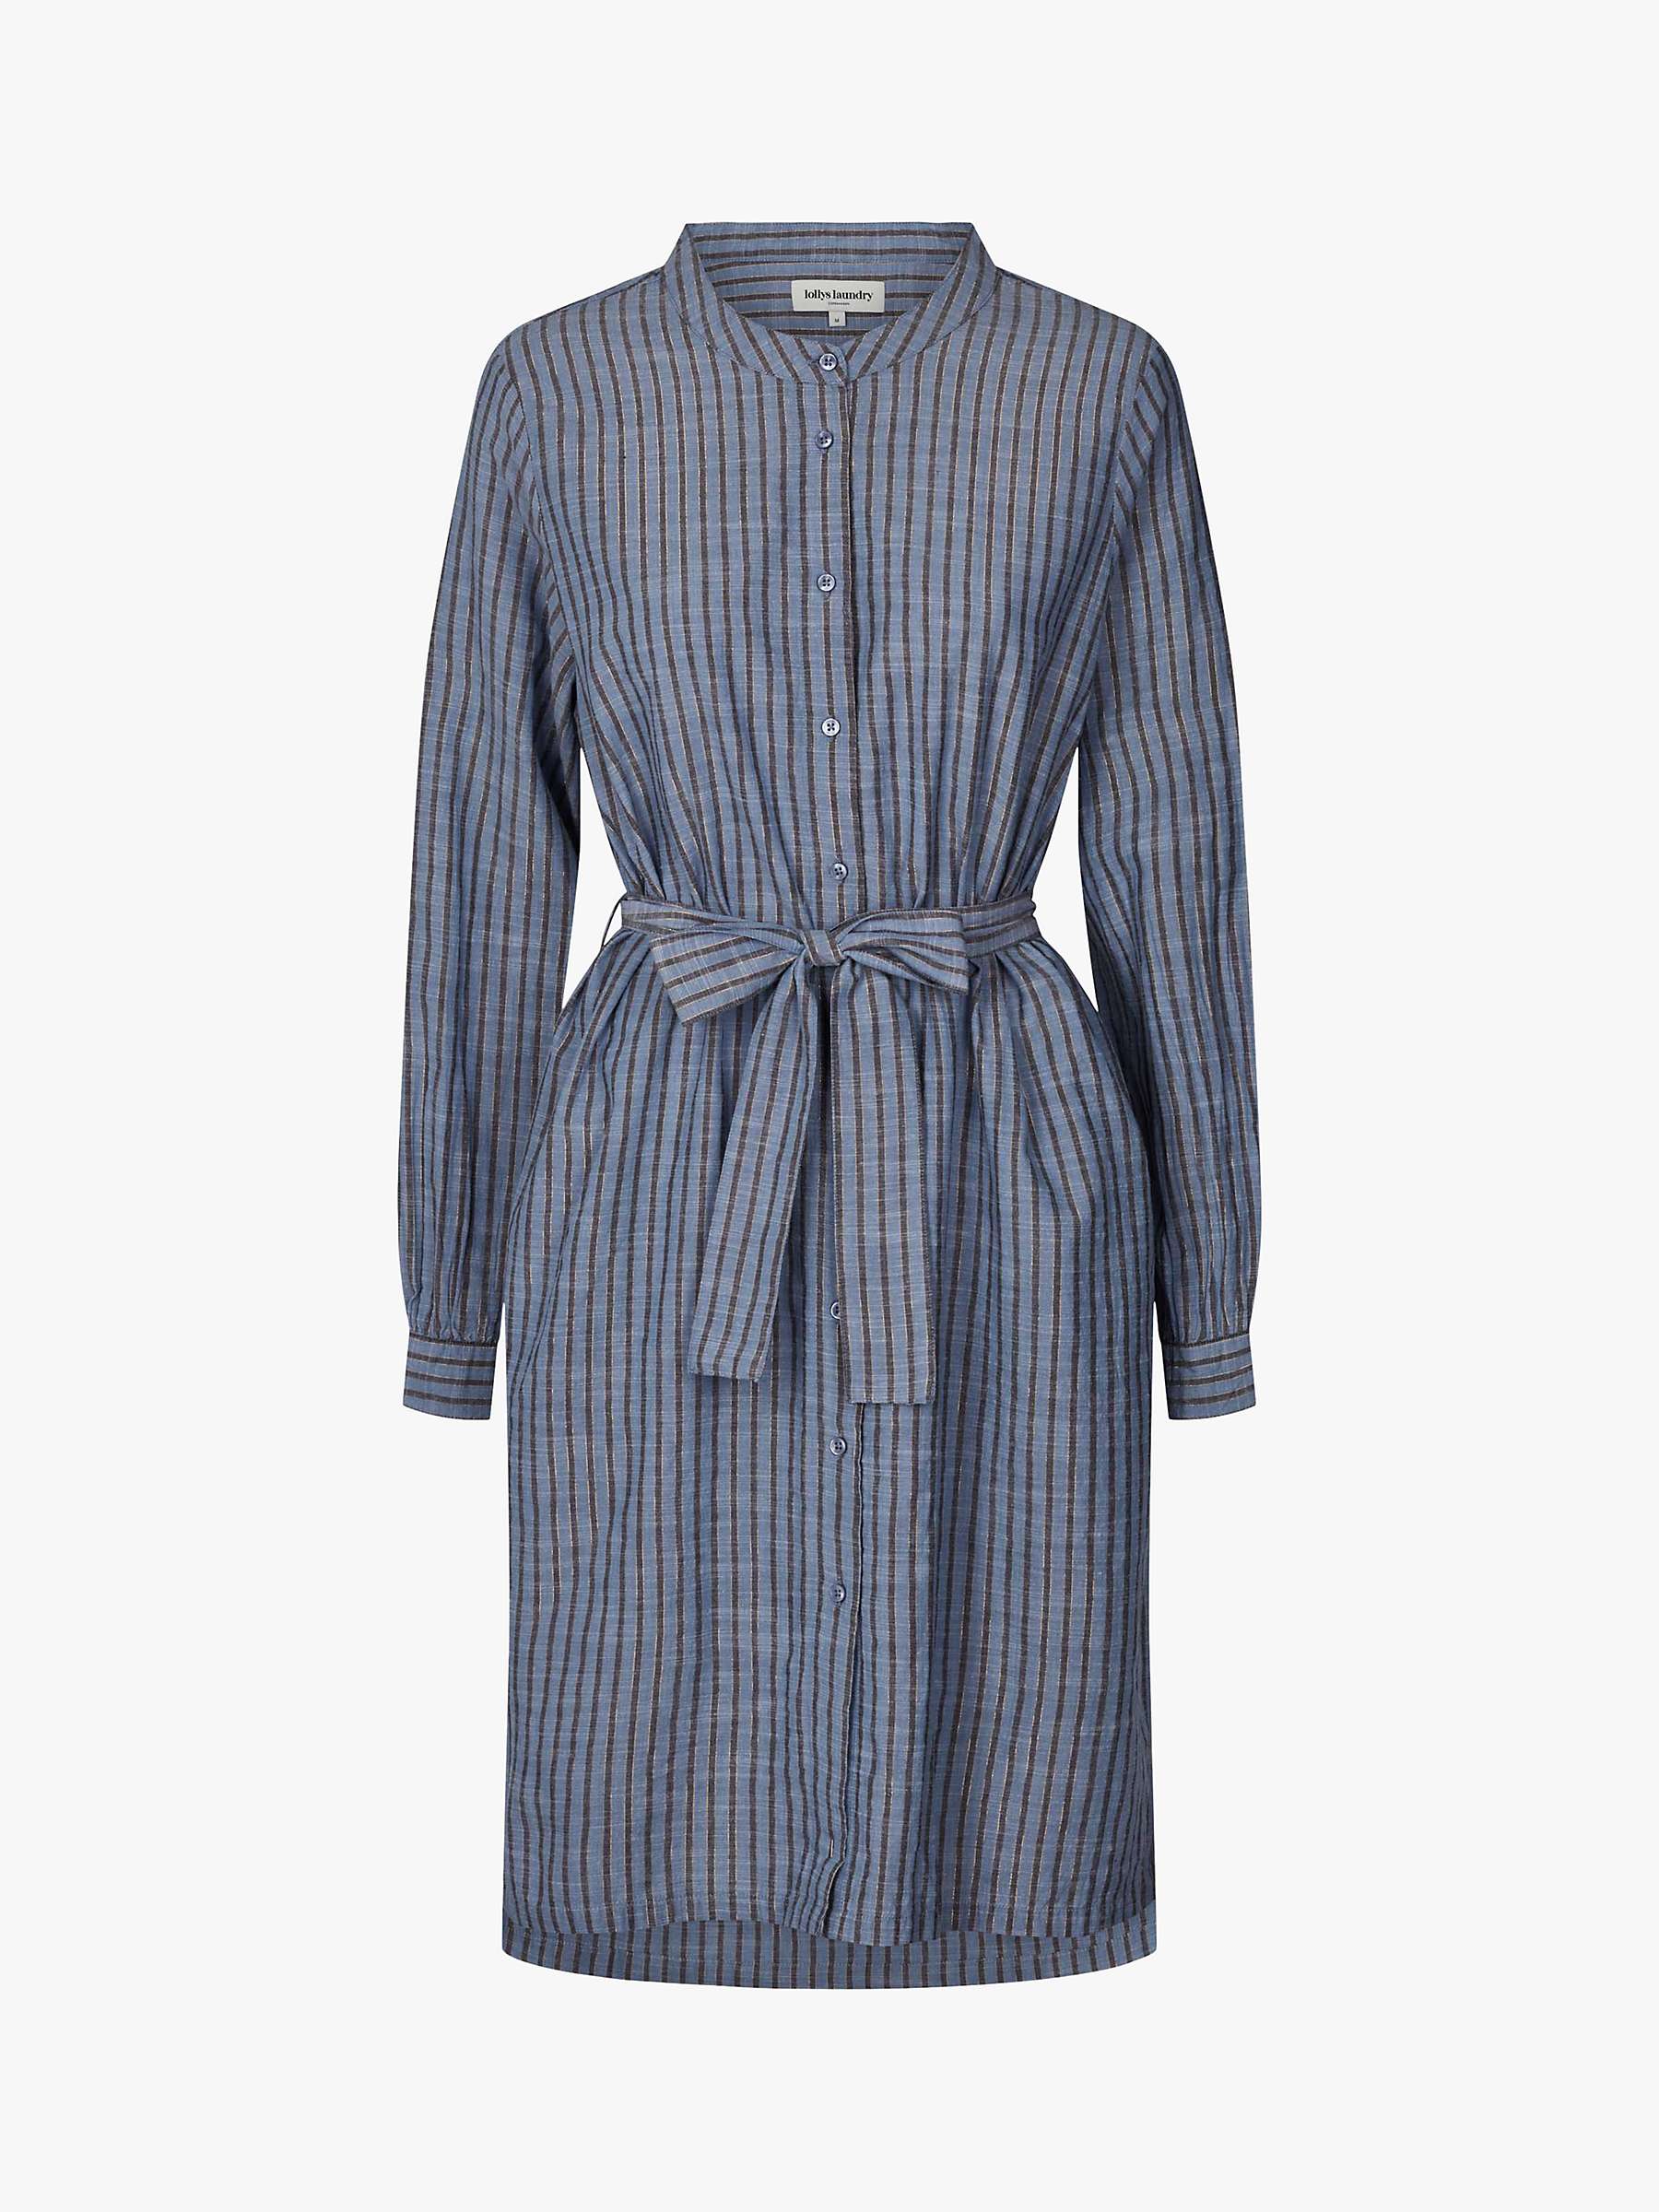 Buy Lollys Laundry Vega Stripe Shirt Dress, Blue Online at johnlewis.com